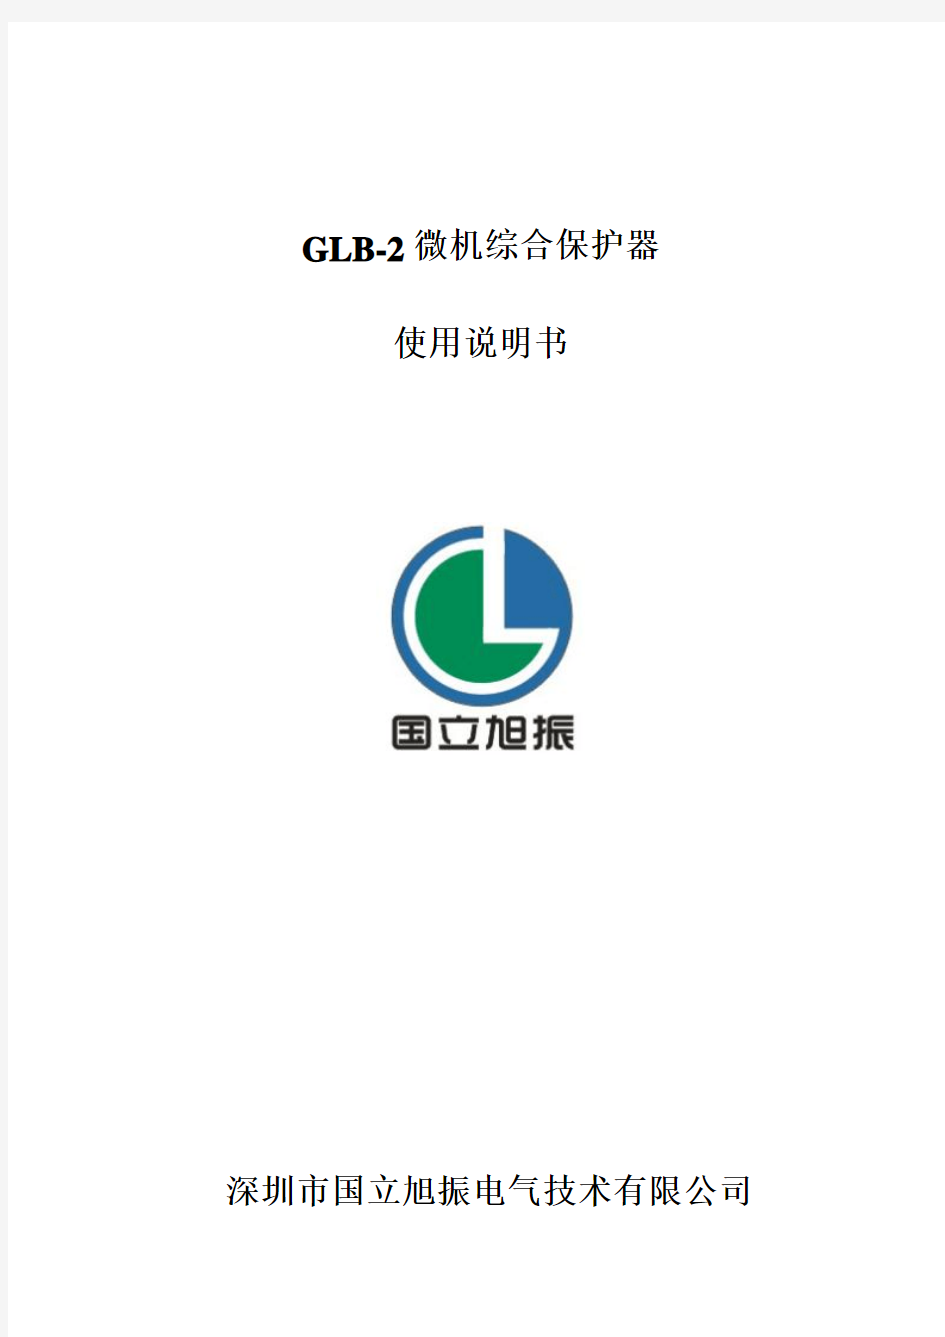 GLB-2A发电机低频低压解列装置说明书